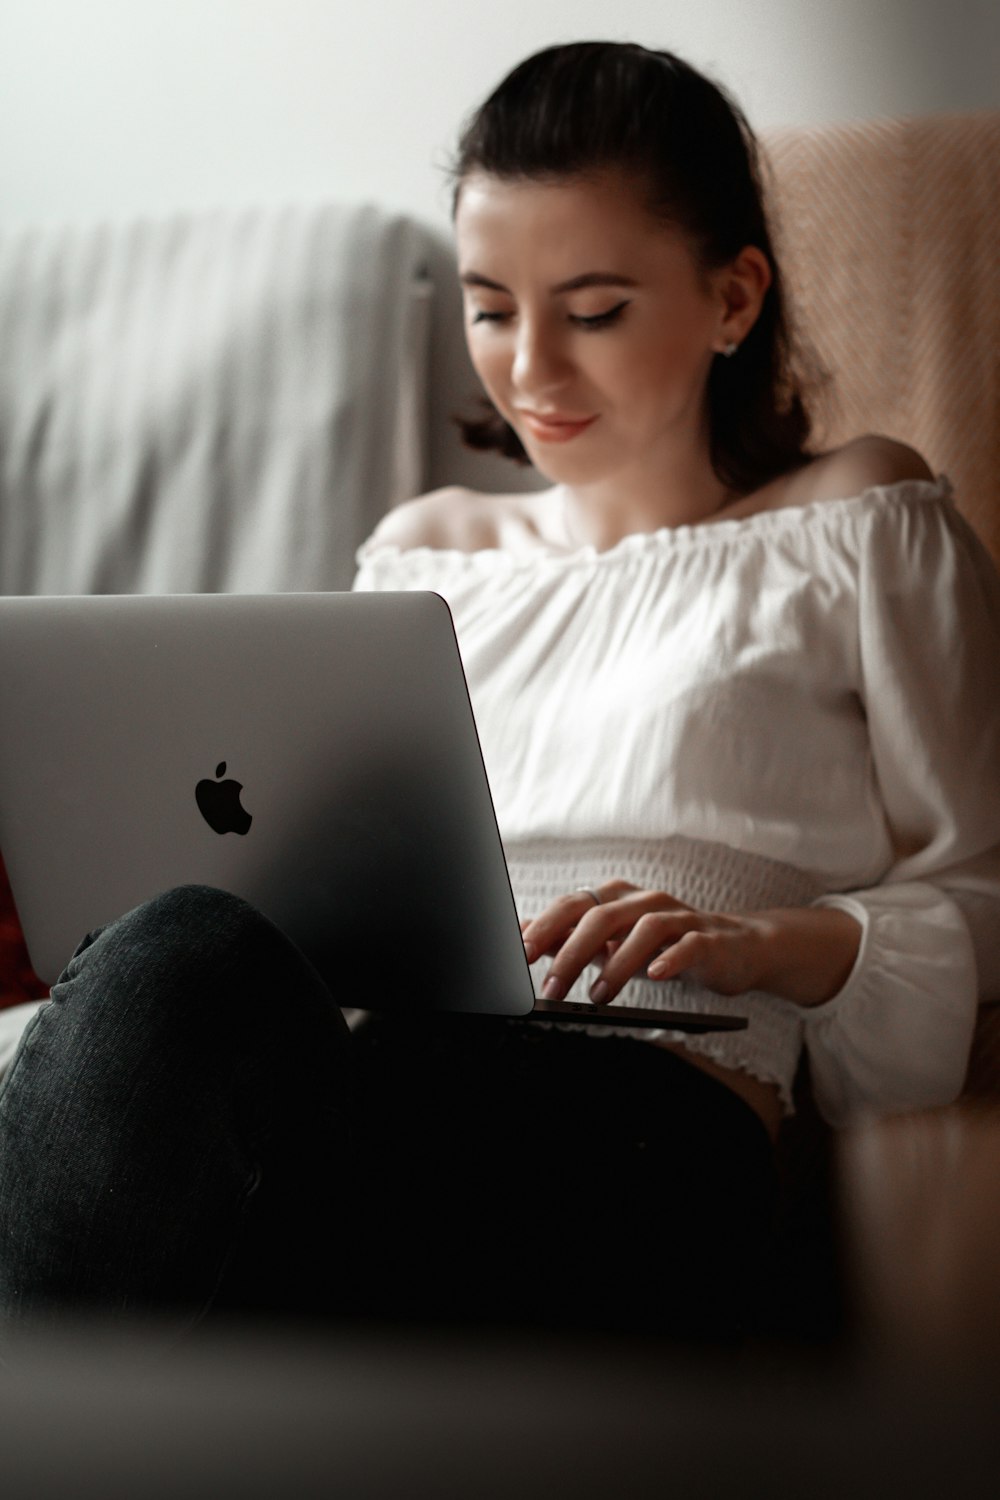 흰색 긴 소매 셔츠와 검은 색 바지를 입은 여자가 MacBook을 사용하여 침대에 앉아